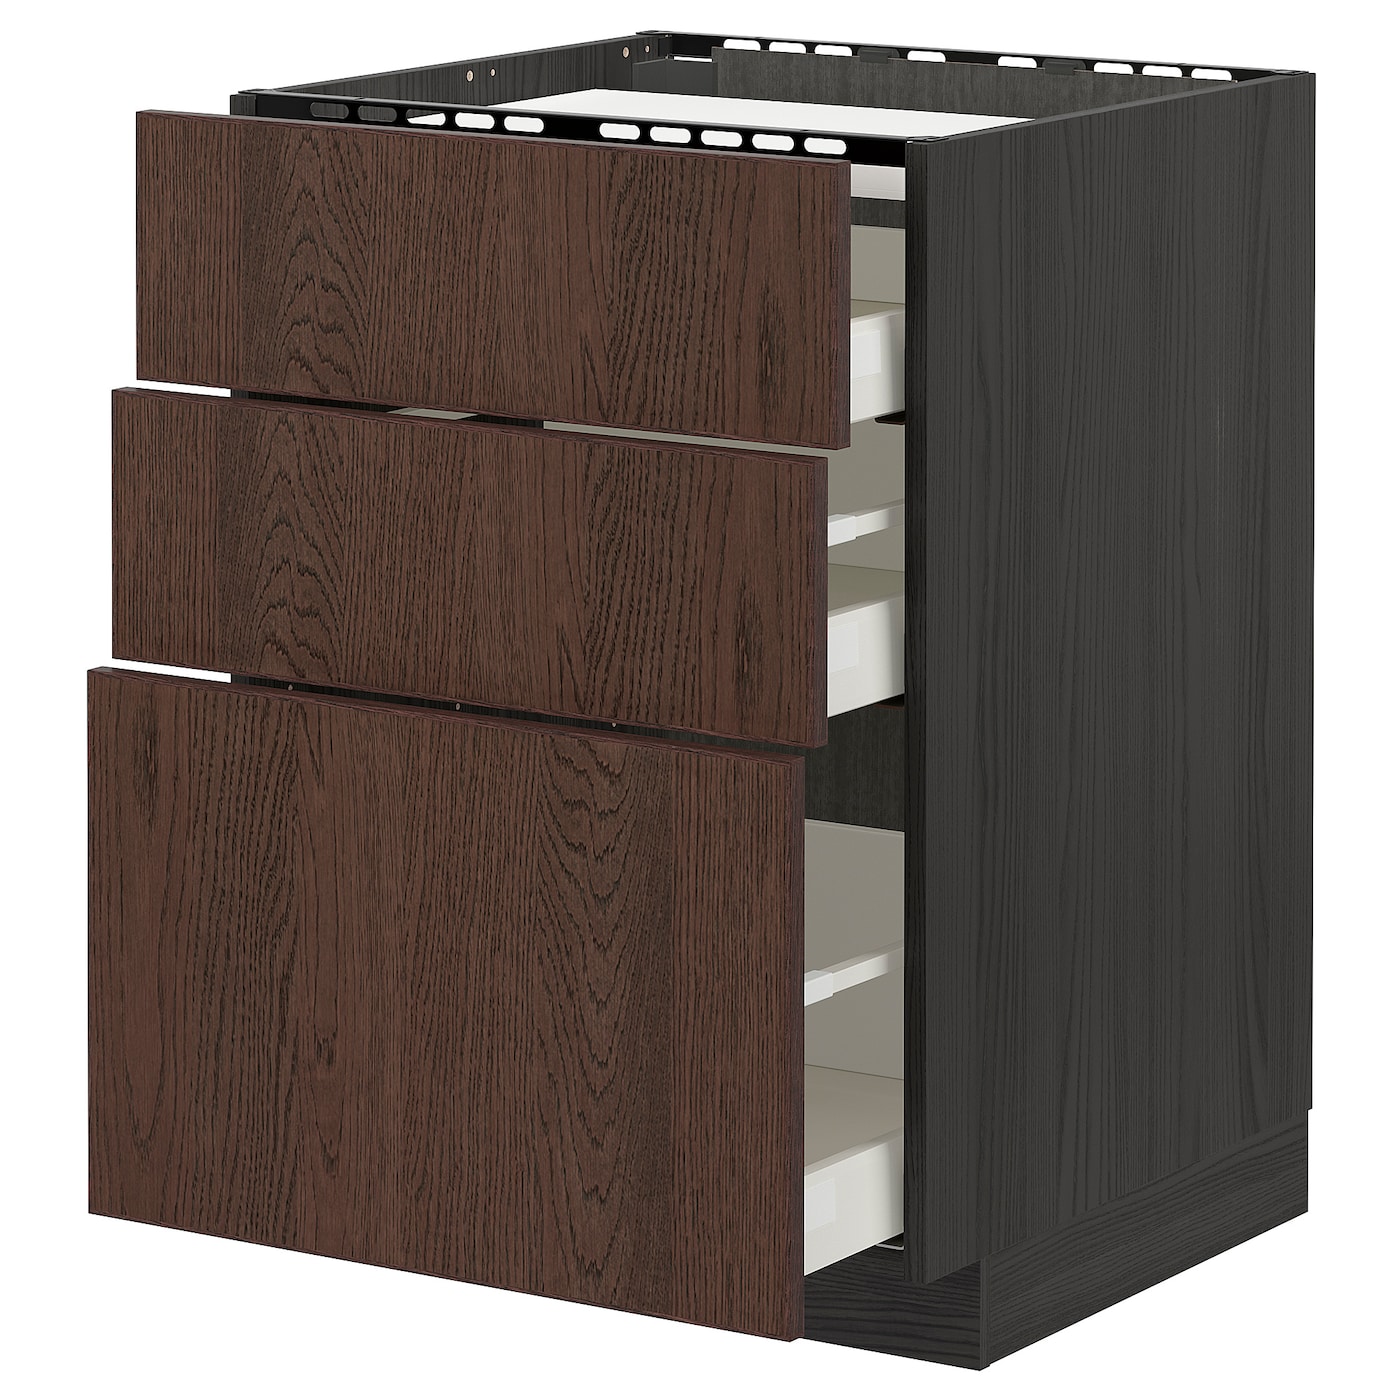 Напольный кухонный шкаф  - IKEA METOD MAXIMERA, 88x61,6x60см, черный/коричневый, МЕТОД МАКСИМЕРА ИКЕА